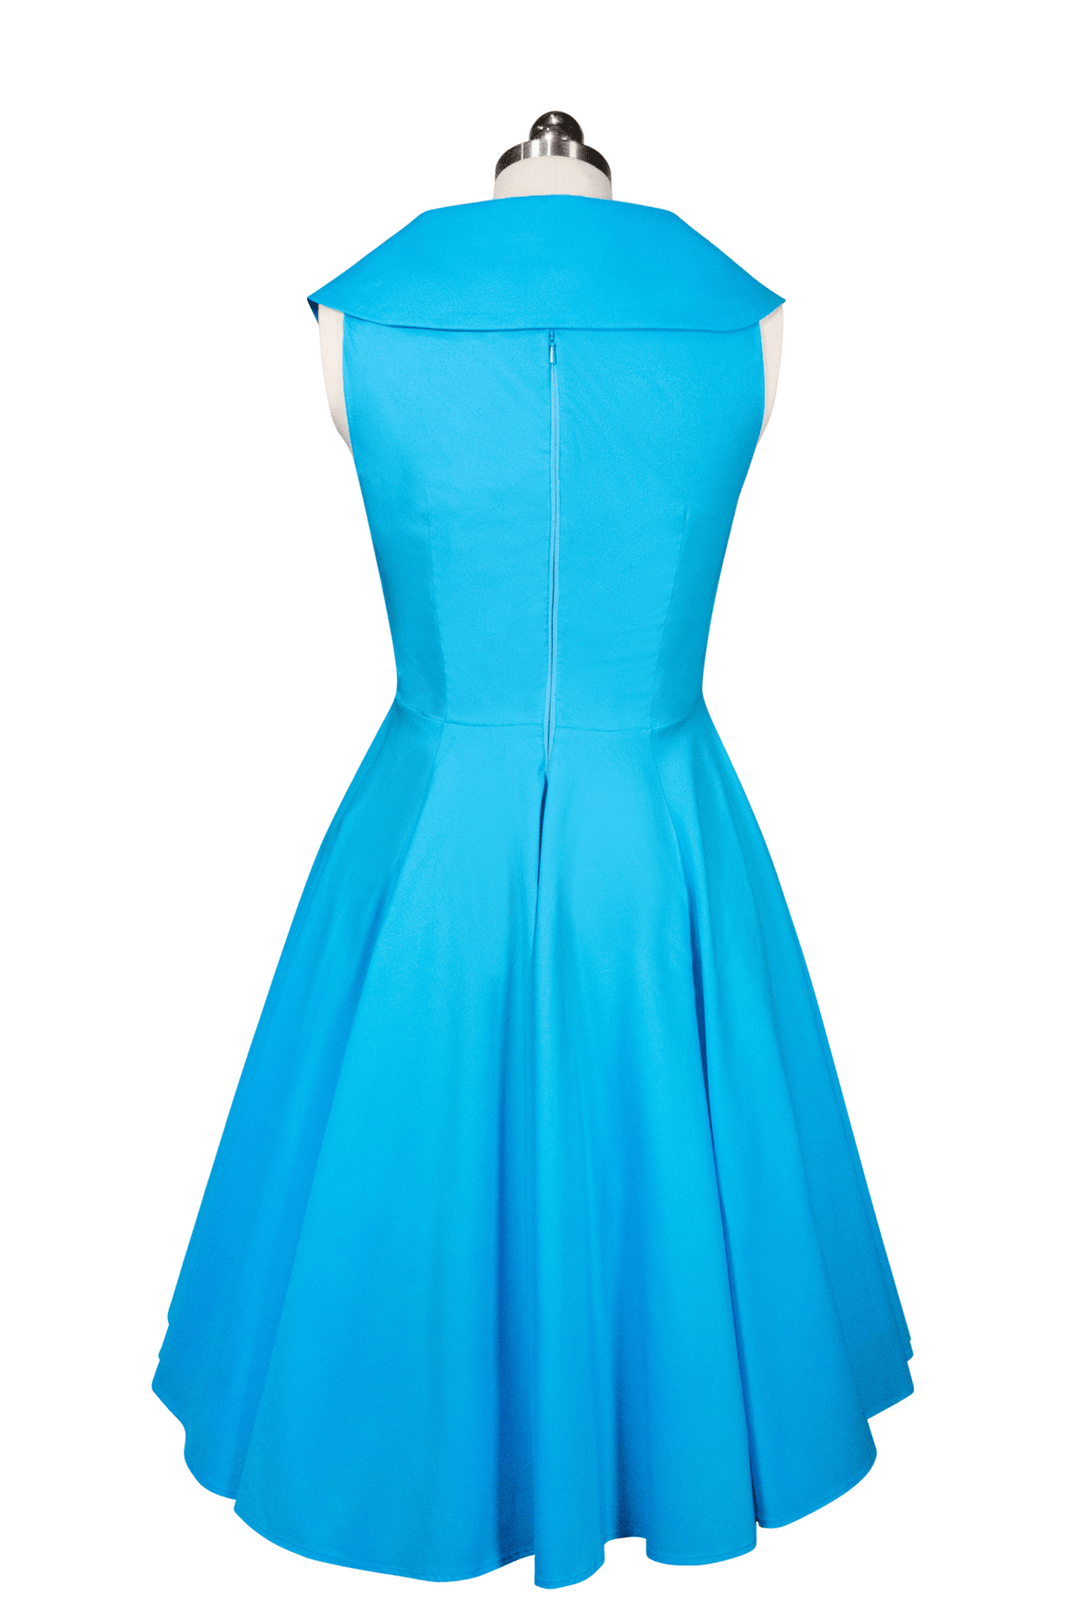 D'Amour Moonlight Cocktail Dress (Blue) - Kitten D'Amour